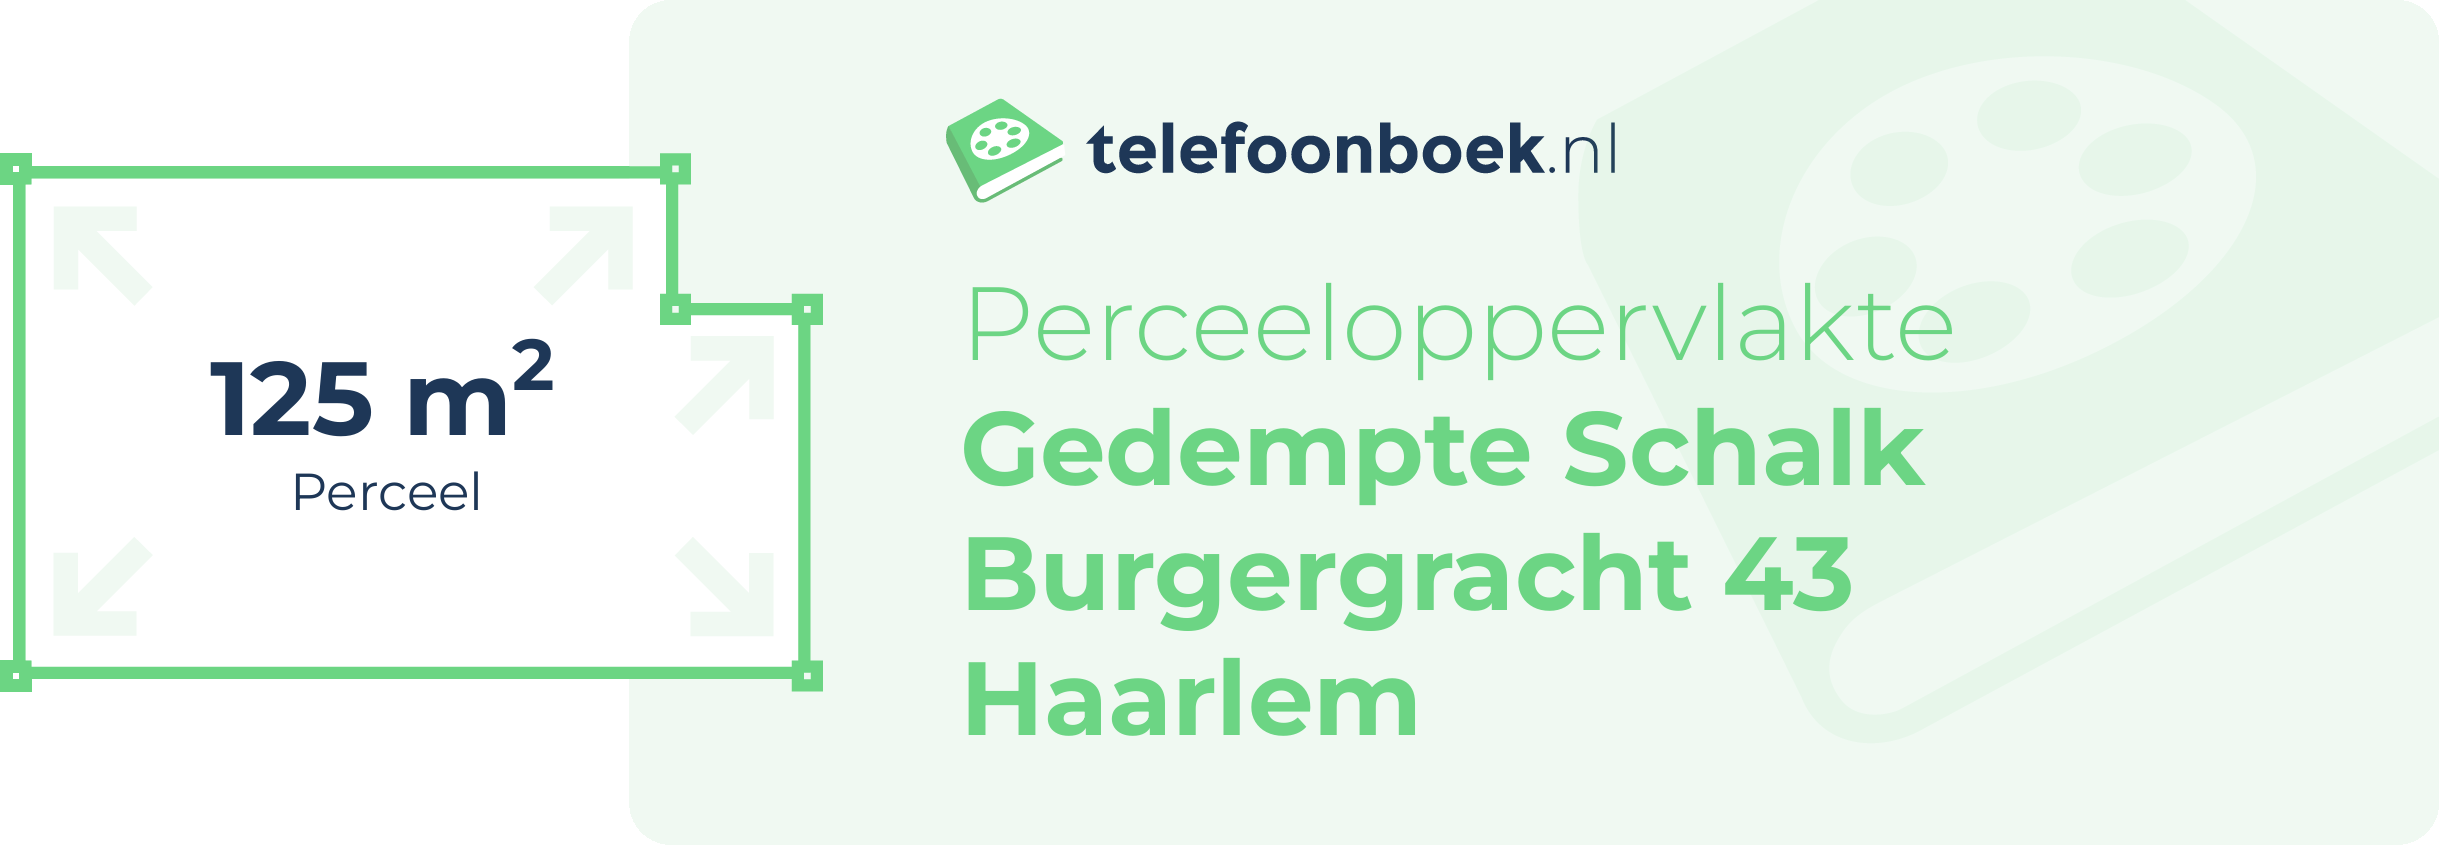 Perceeloppervlakte Gedempte Schalk Burgergracht 43 Haarlem